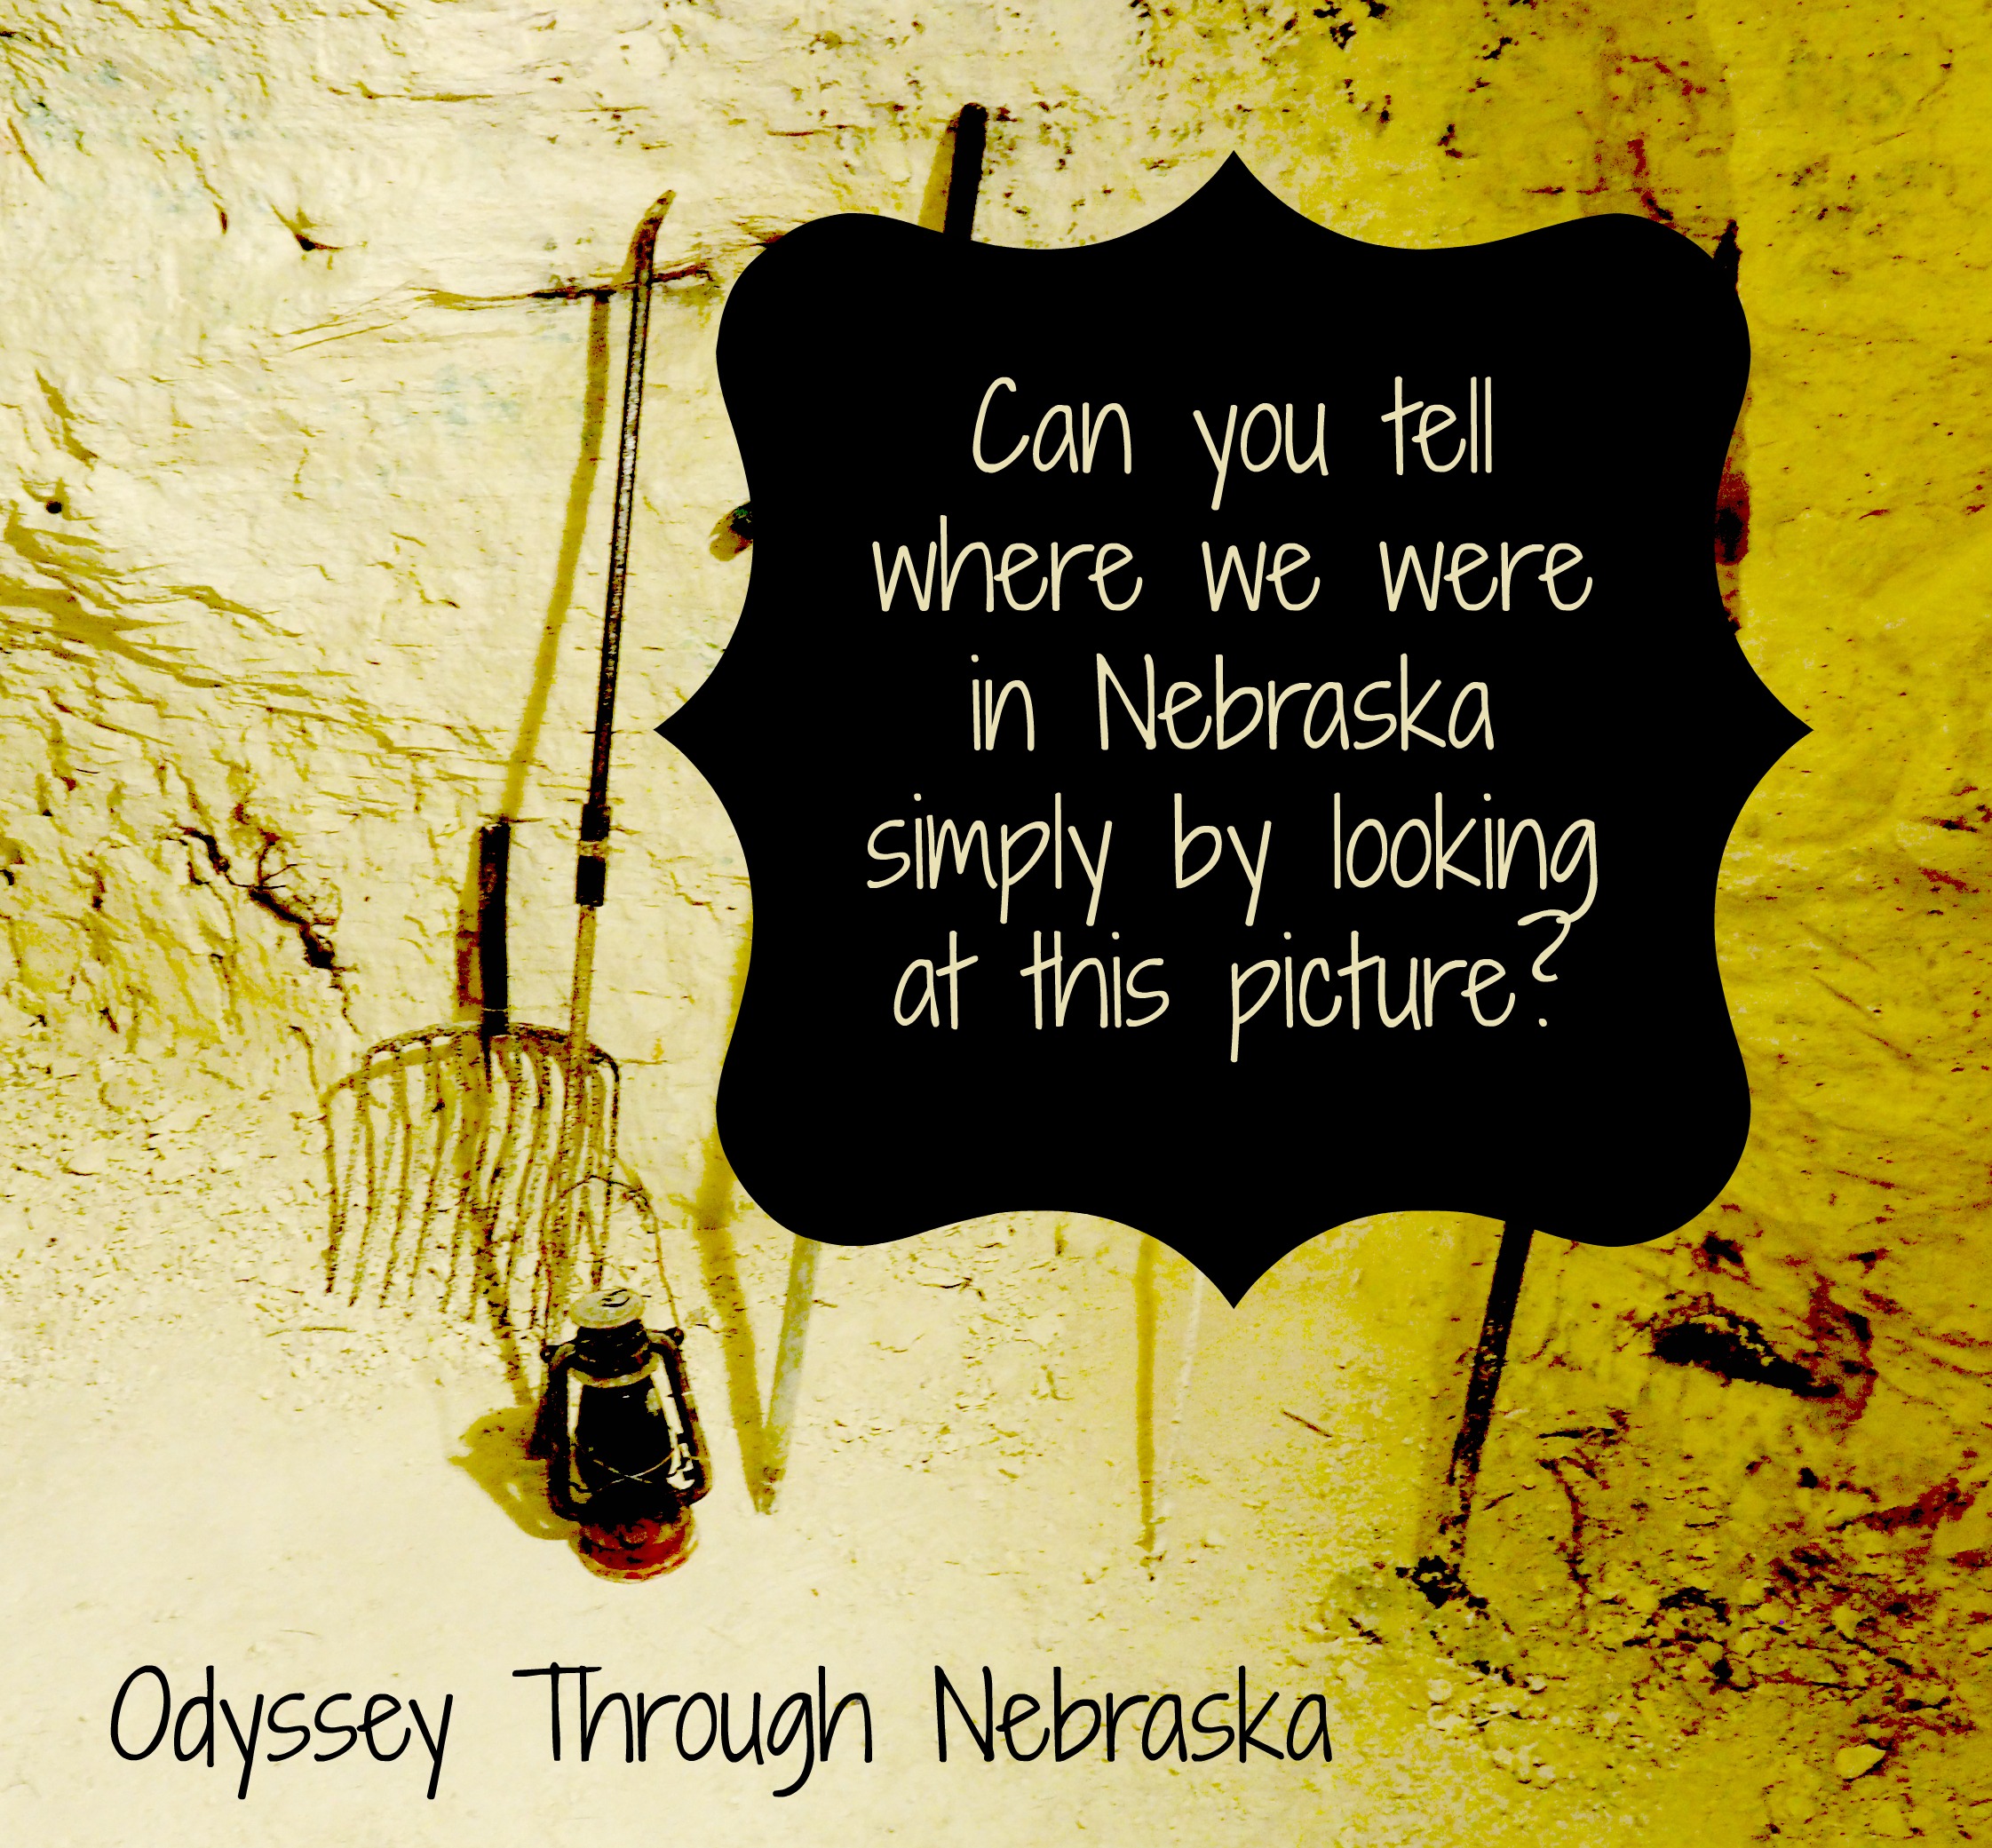 Odyssey Through Nebraska Wordless Wednesday